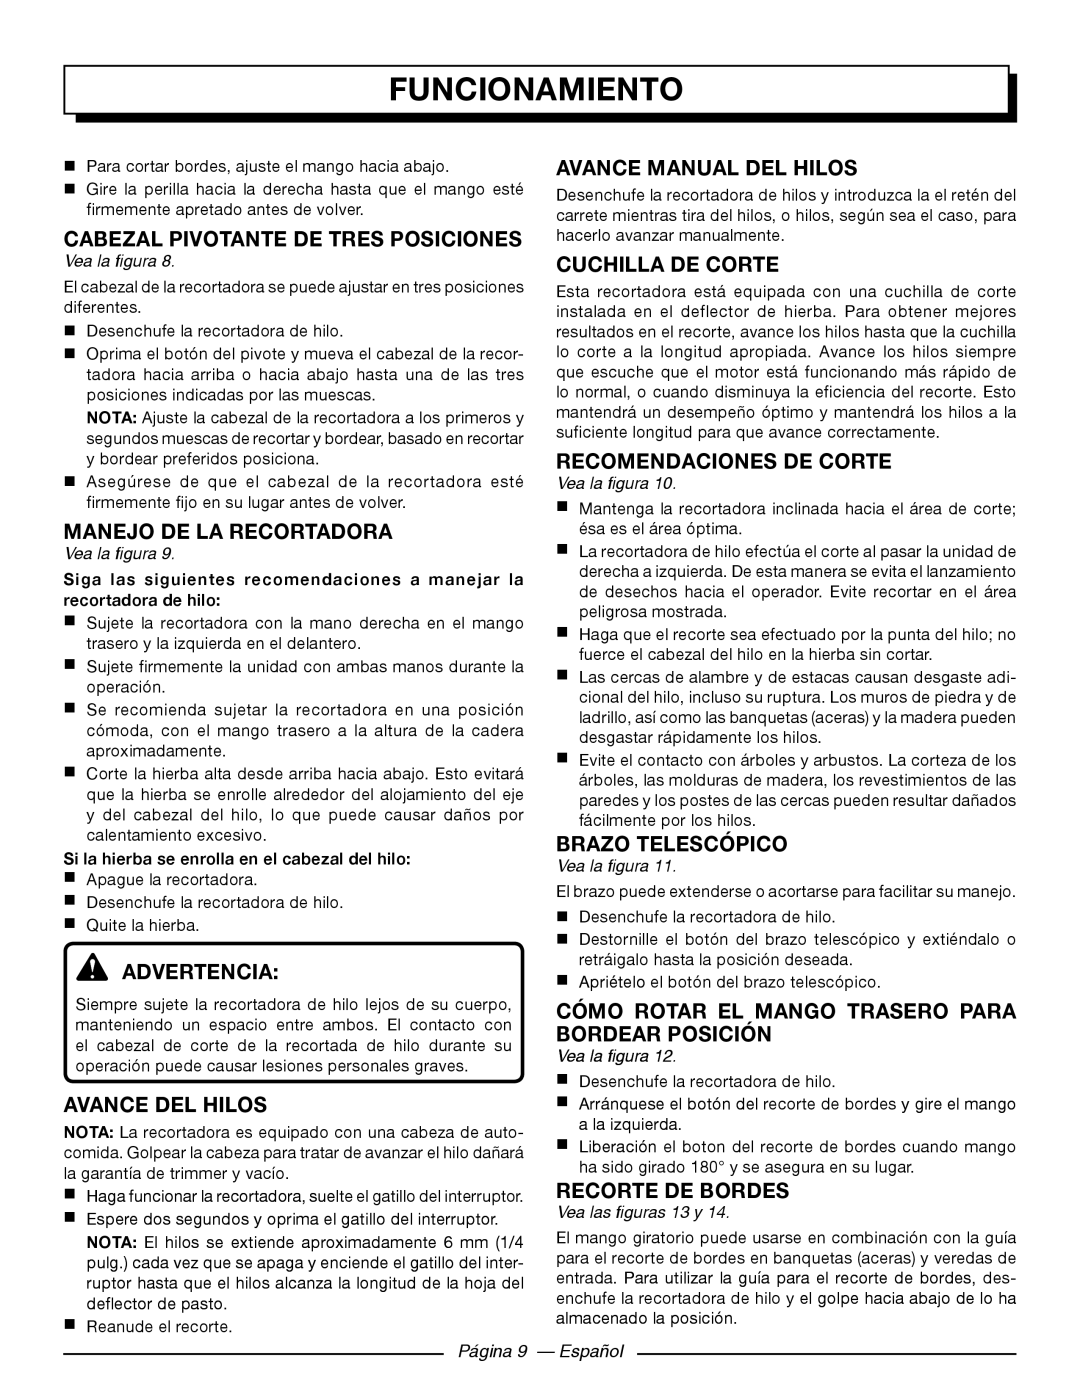 Homelite UT41121 Manejo De La Recortadora, Avance Del Hilos, Avance Manual Del Hilos, Cuchilla De Corte, Recorte De Bordes 